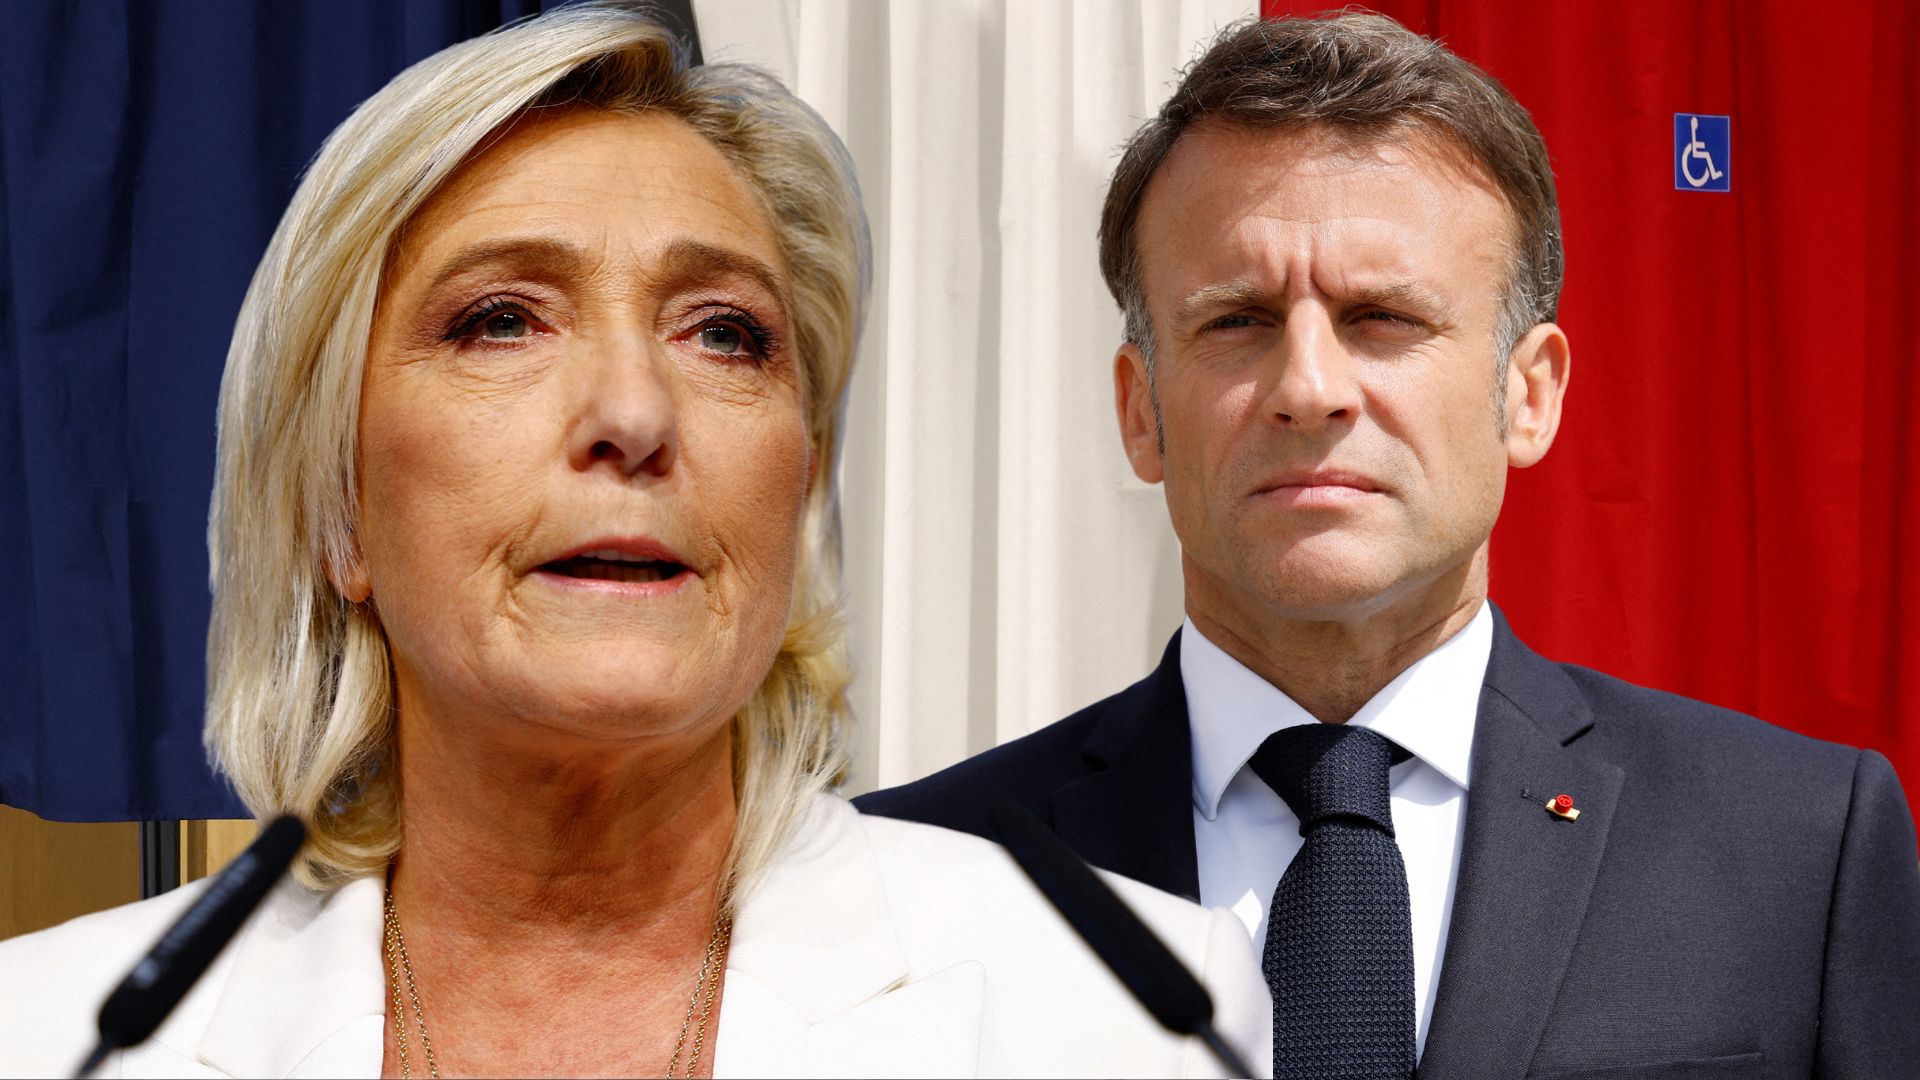 Γαλλία: Πρόωρες εκλογές ανακοίνωσε ο Μακρόν μετά τον θρίαμβο της Λε Πεν